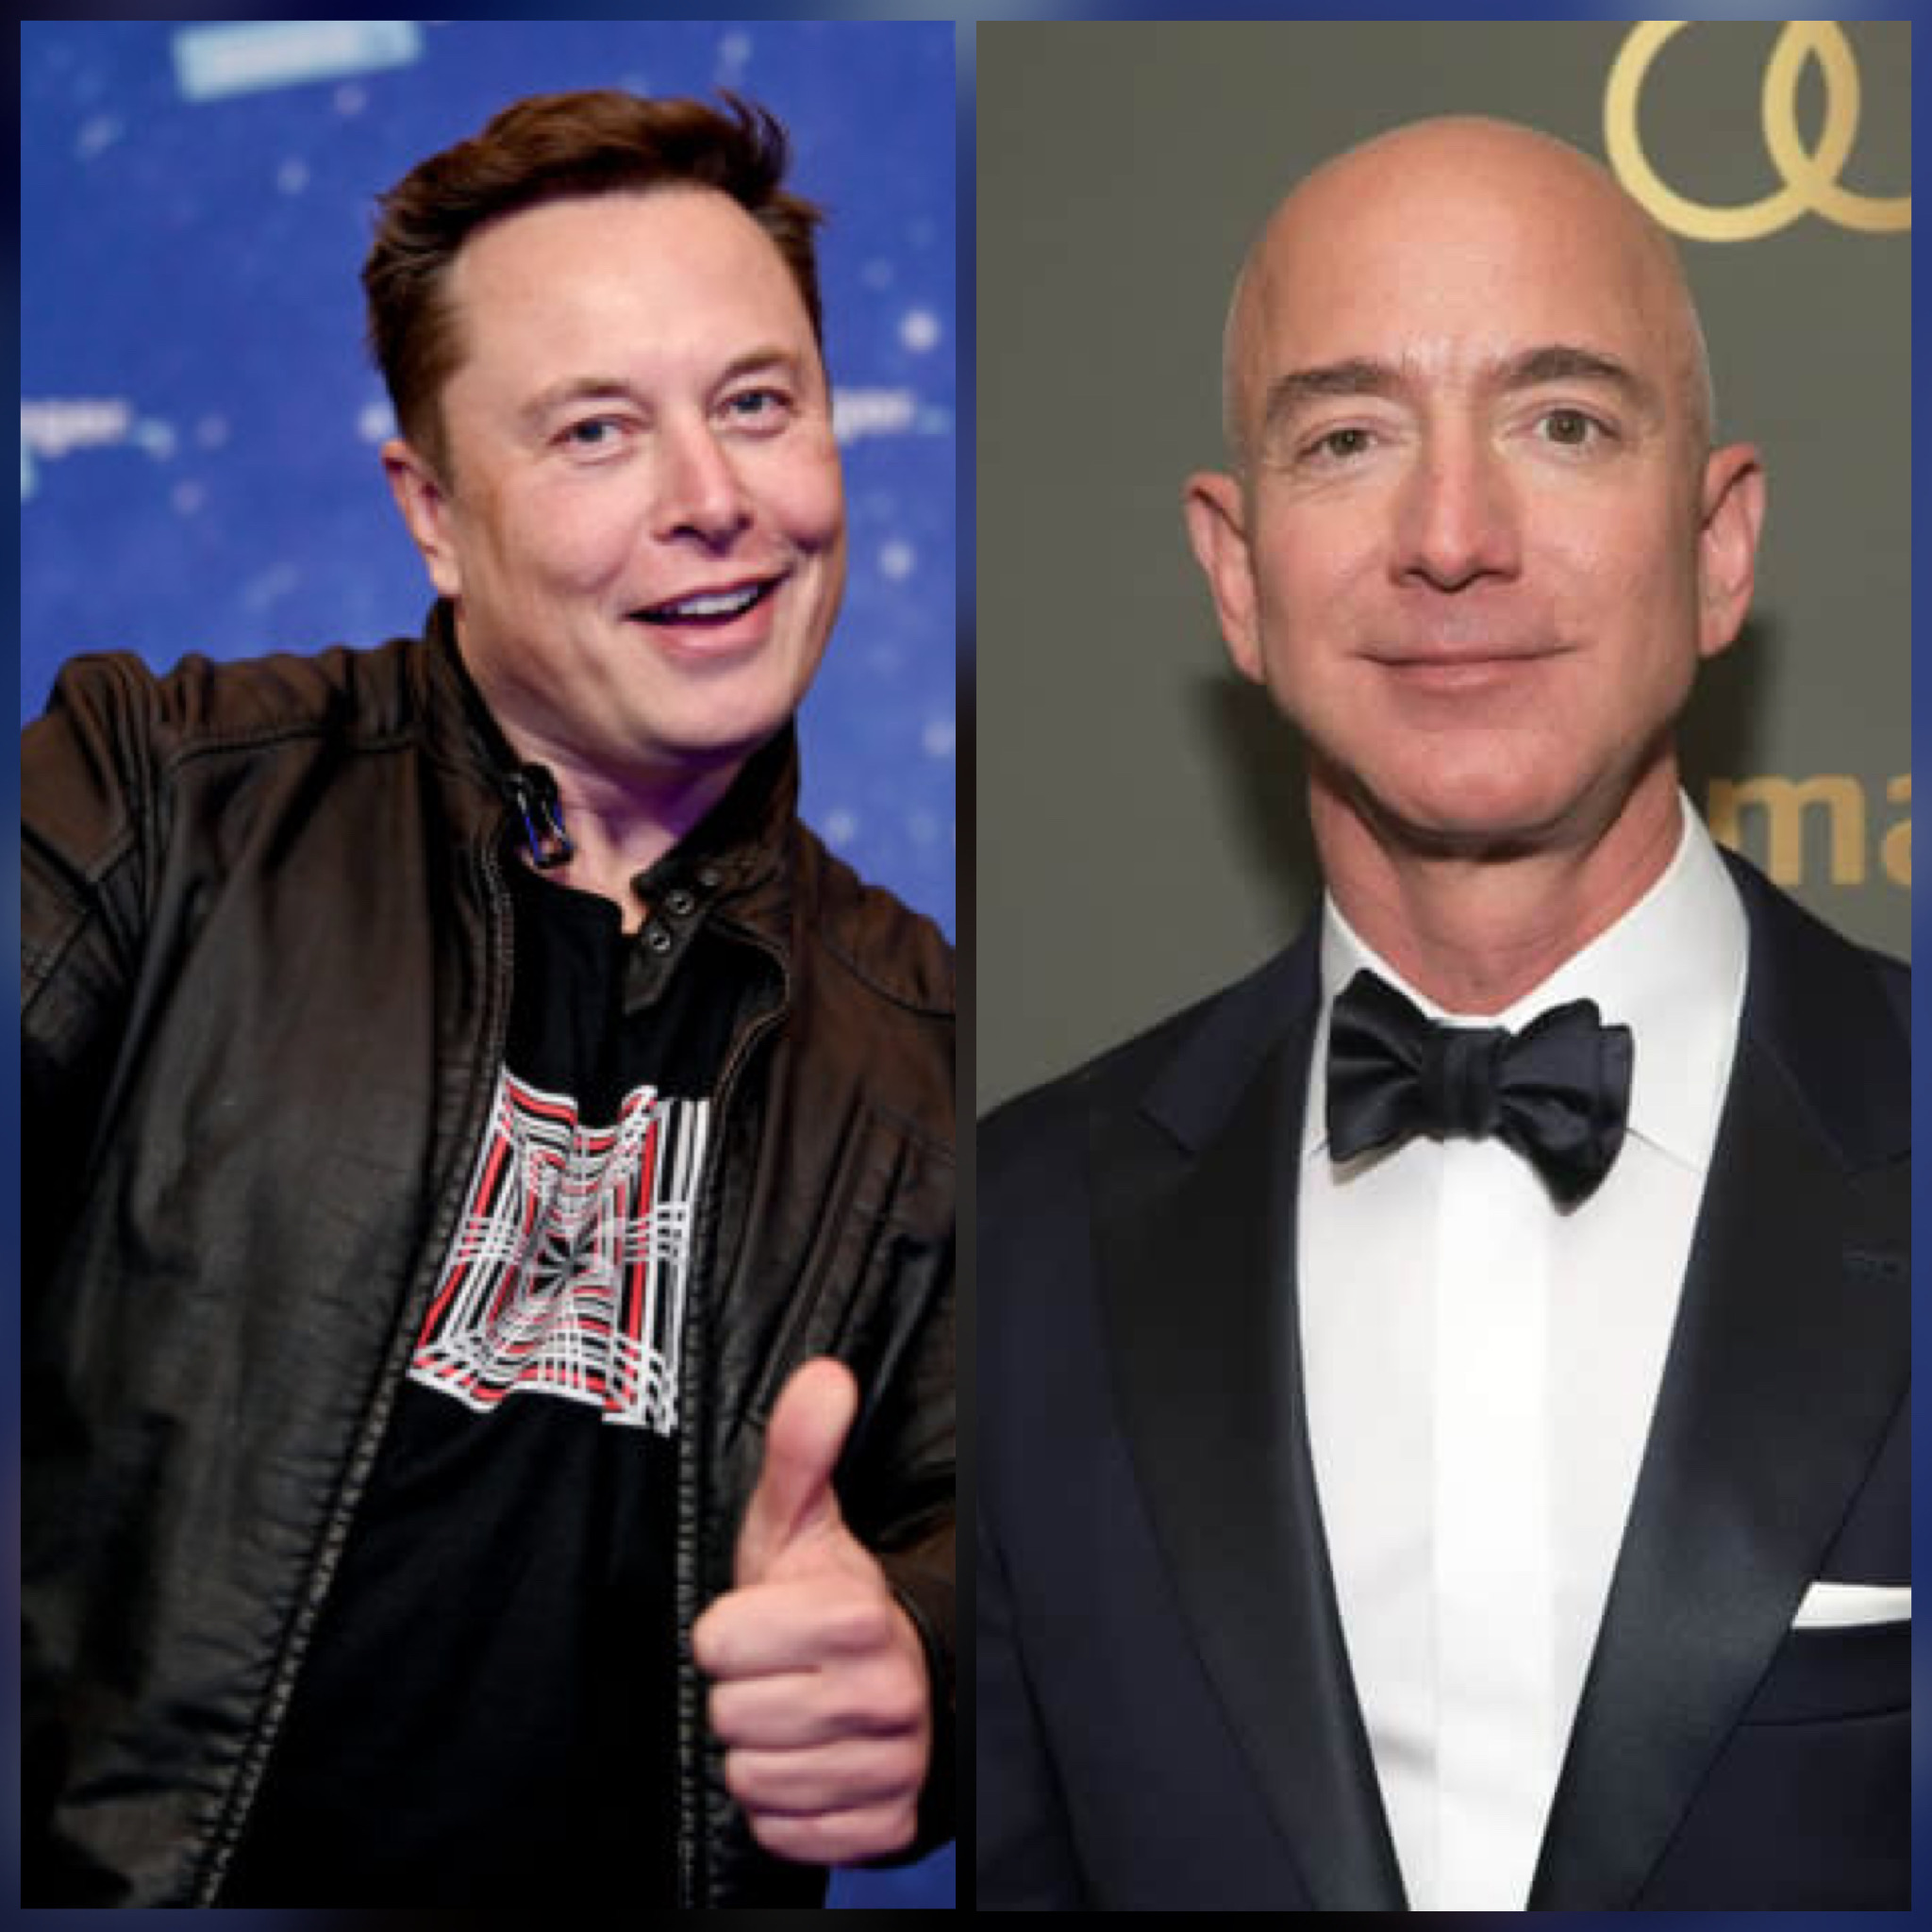 Elon Musk and Jeff Bezos